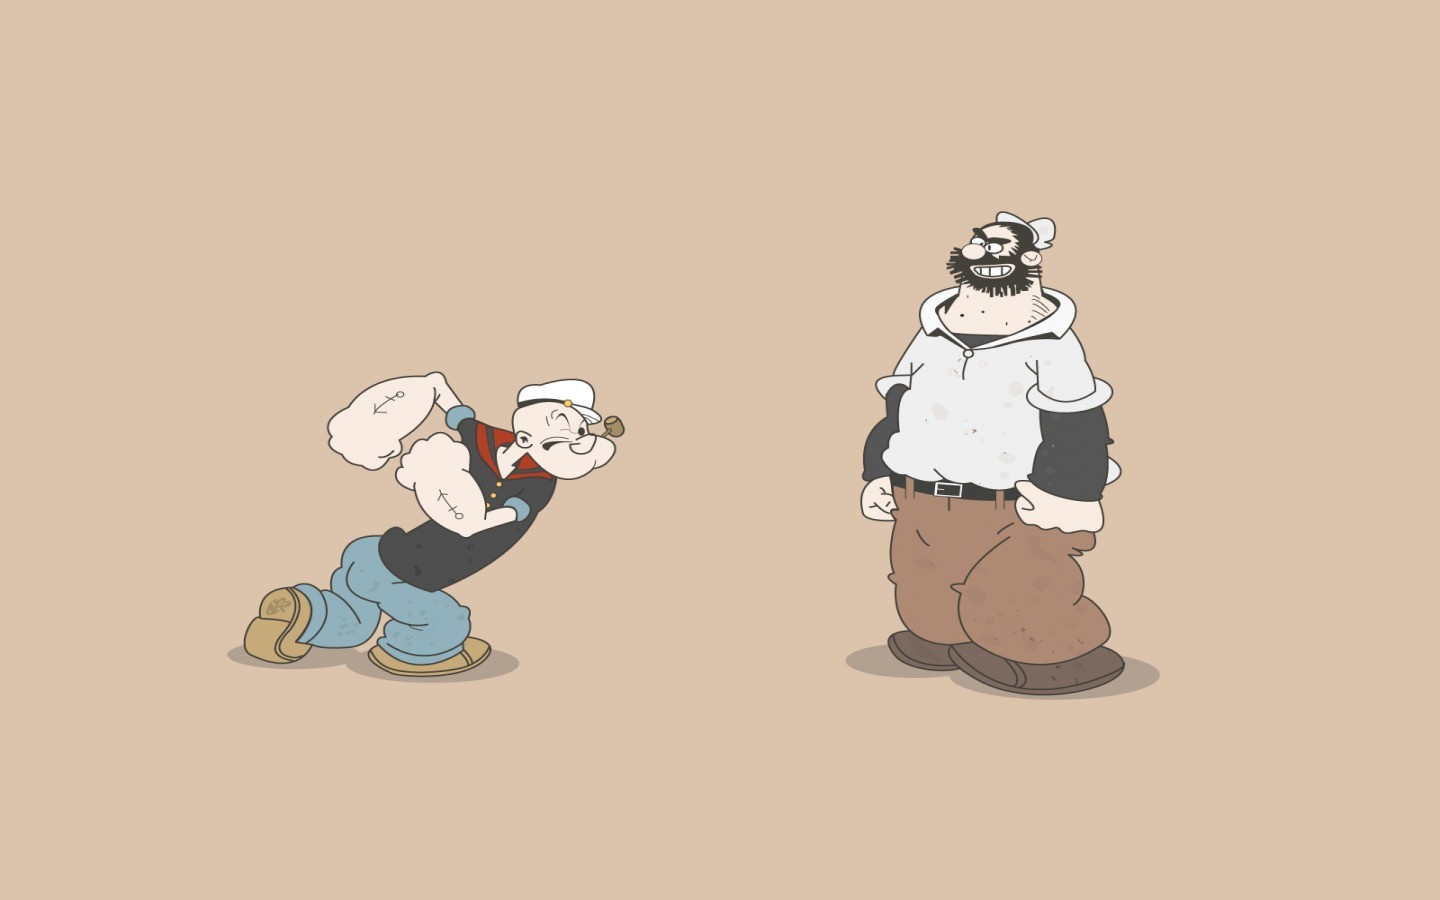 General 1440x900 Popeye cartoon humor simple background